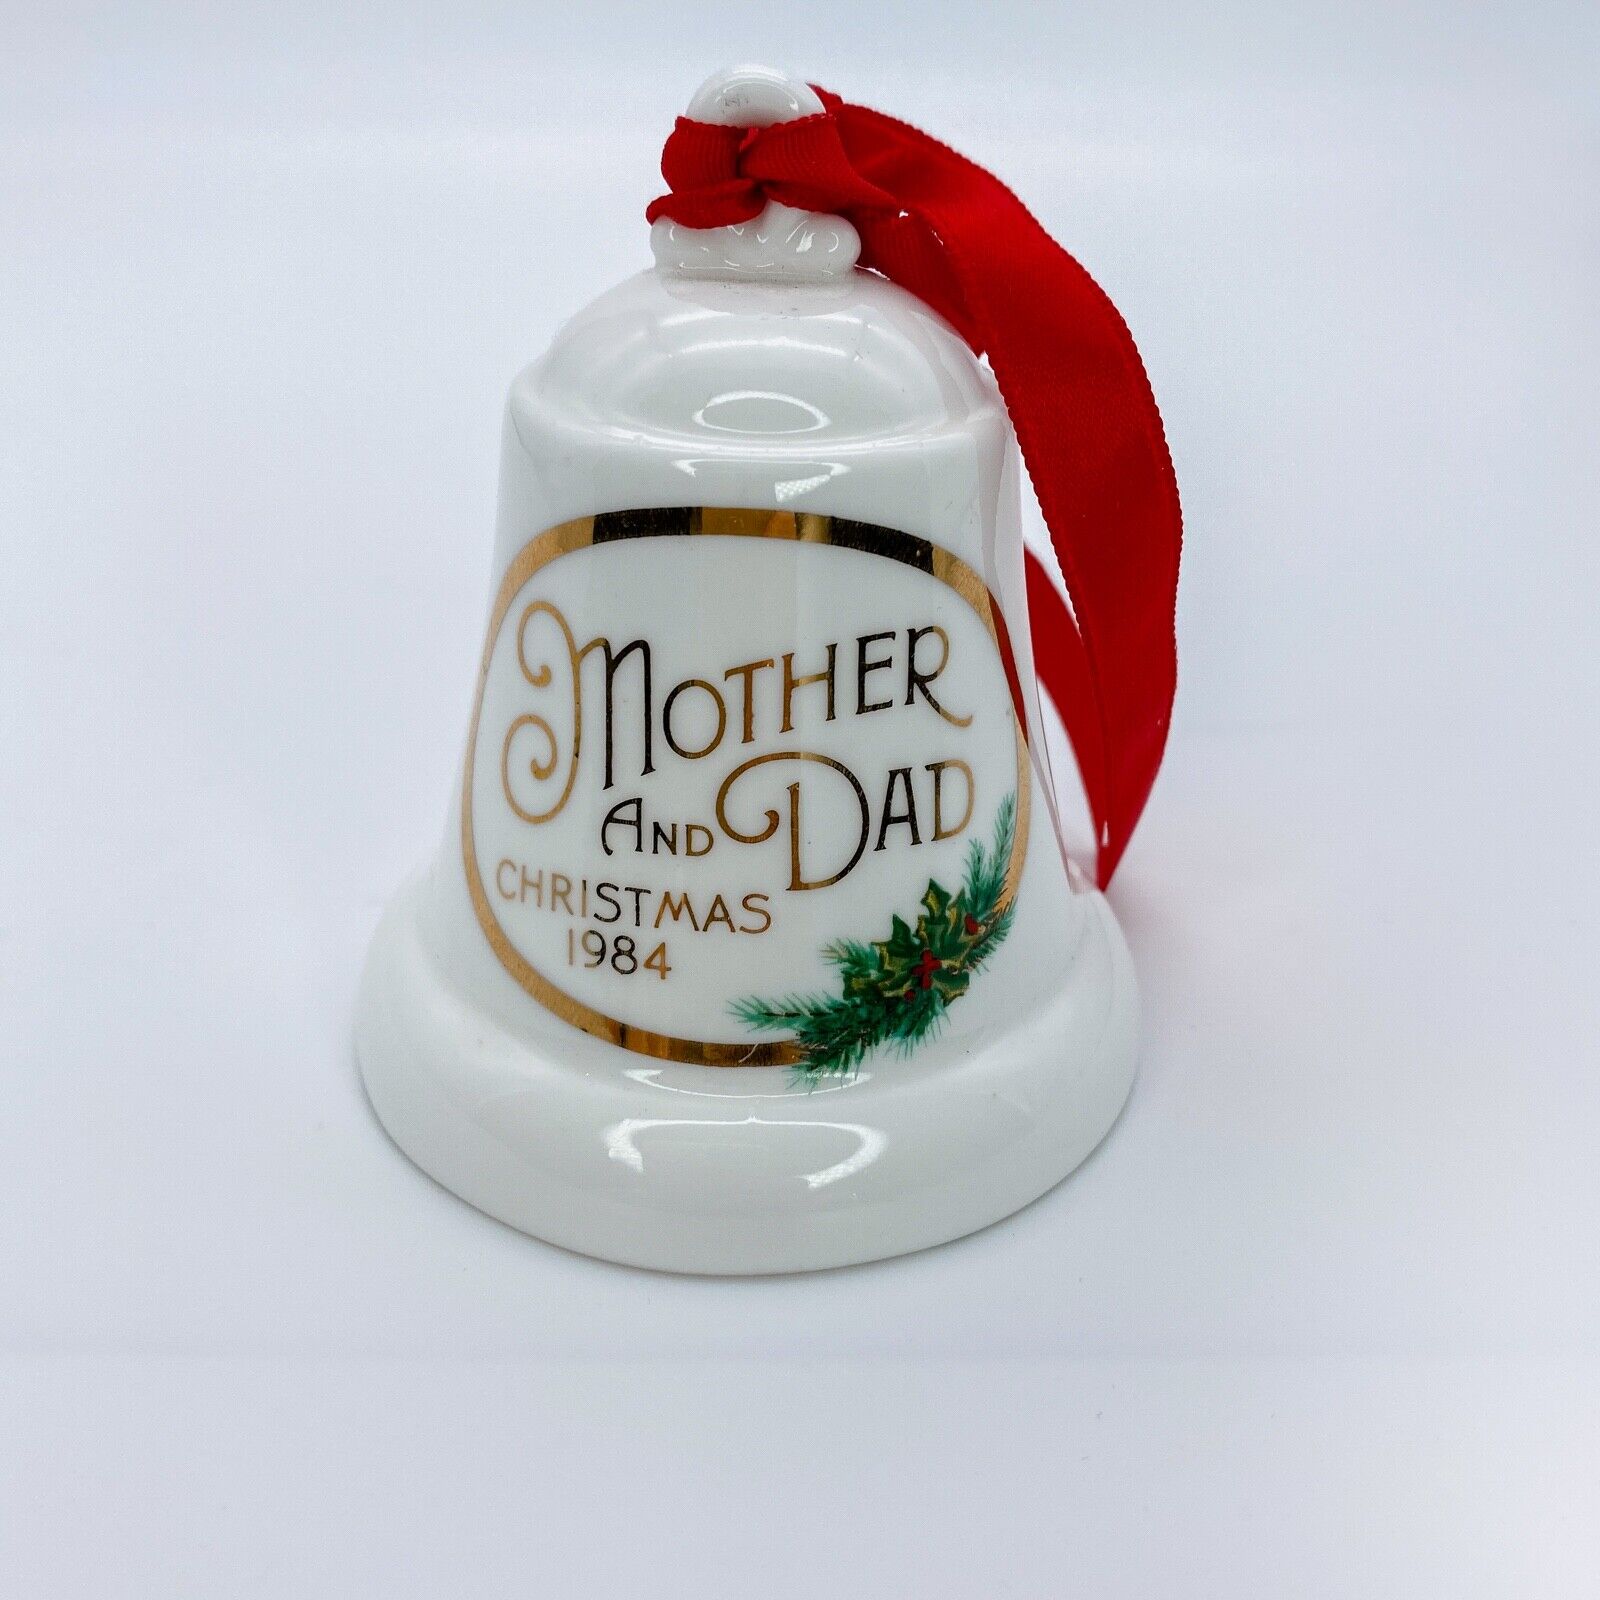 Vintage Hallmark Ornament Porcelain Ceramic Bell for Mother & Dad 1984 White Red